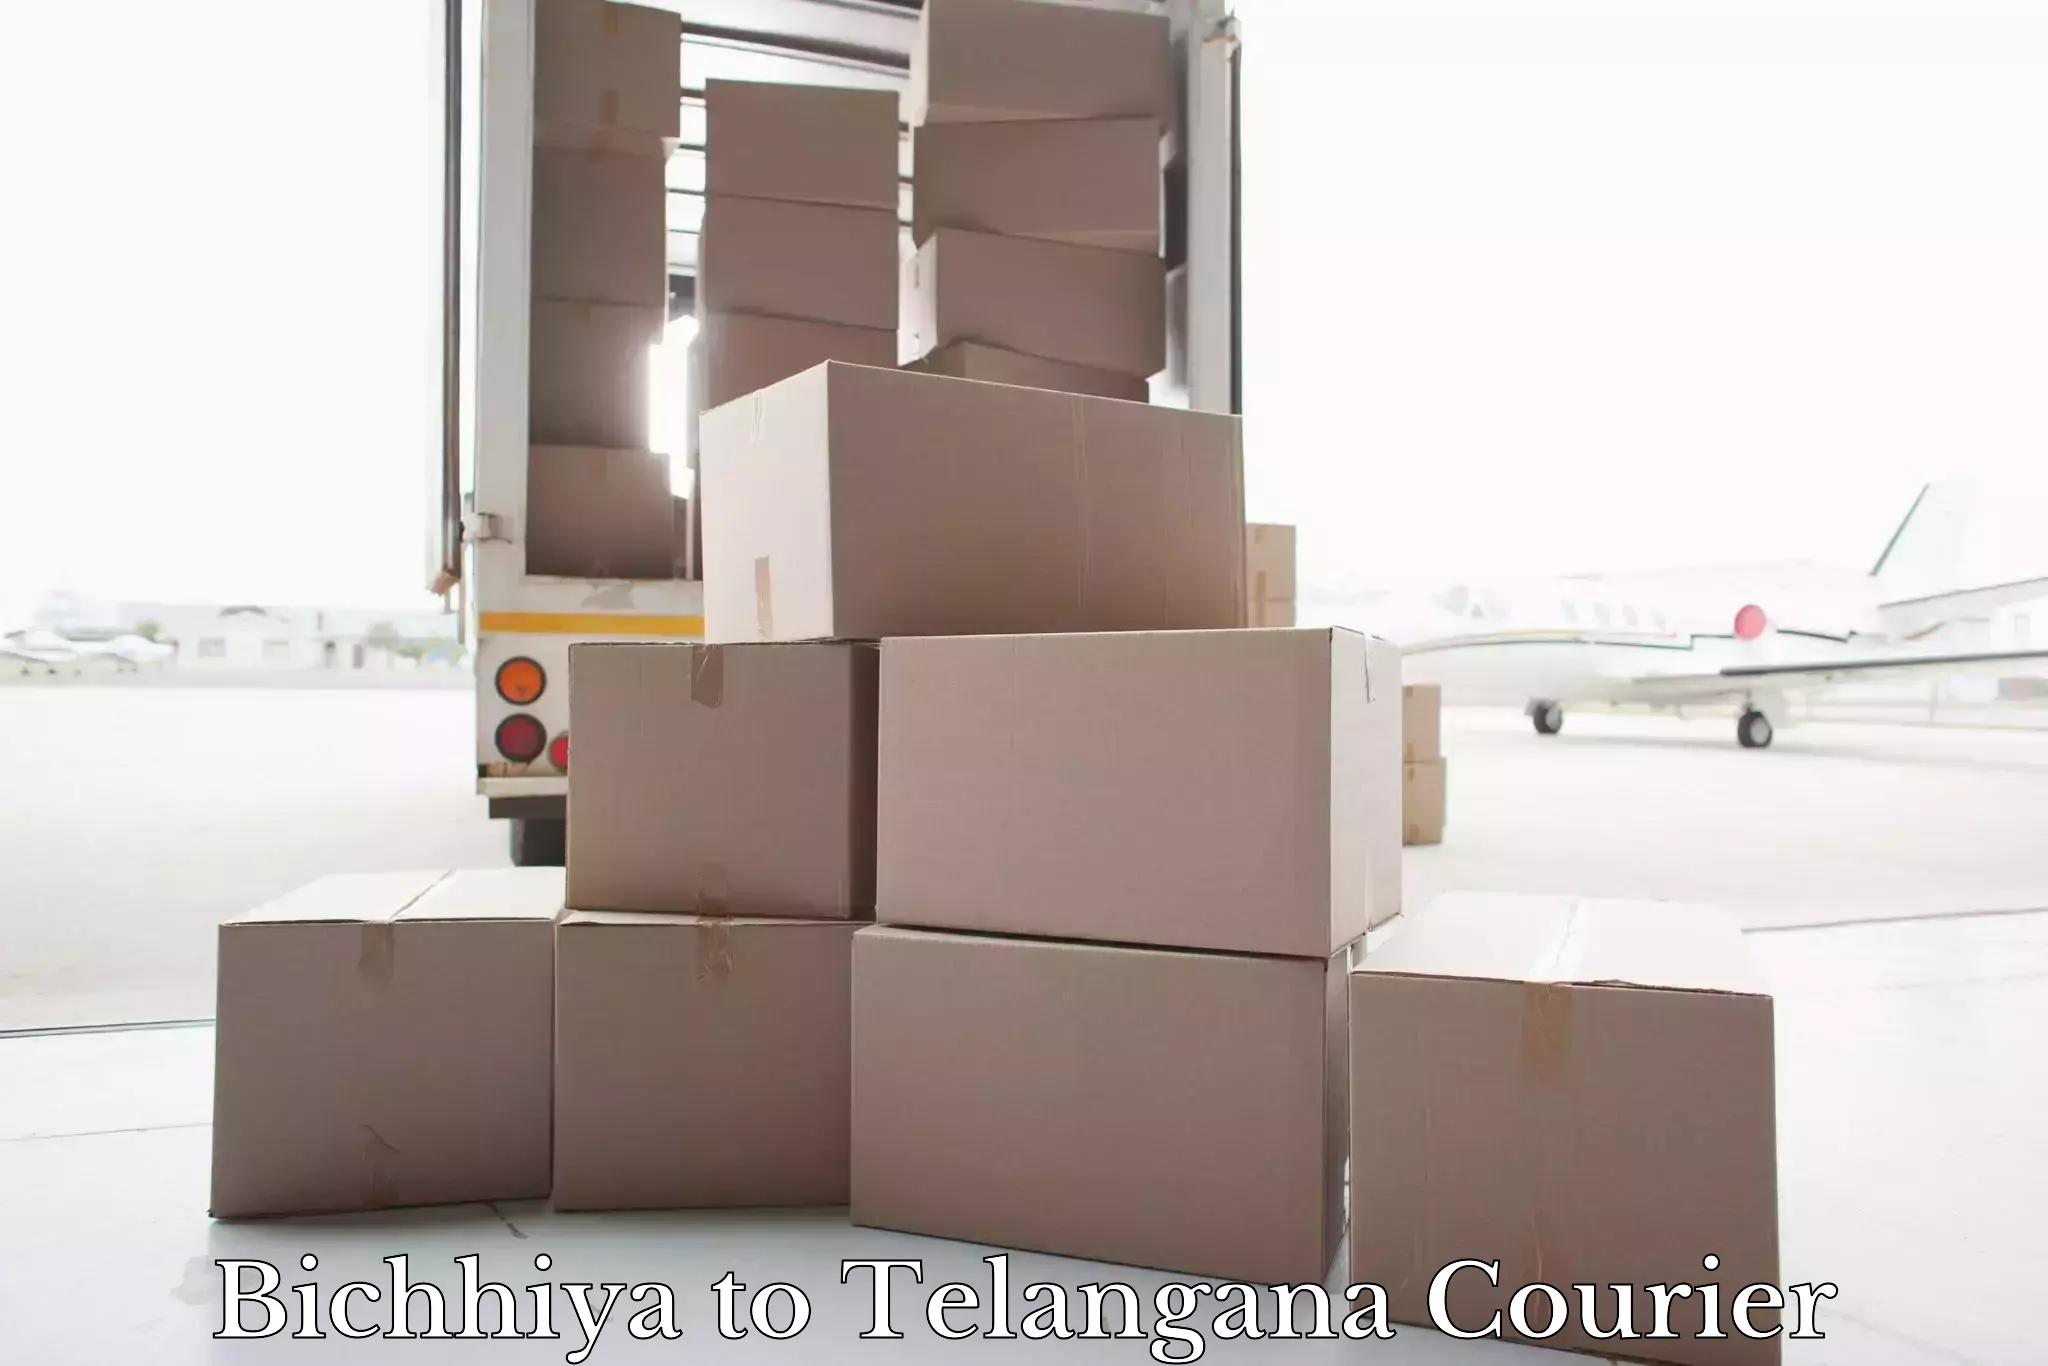 Express luggage delivery Bichhiya to Telangana